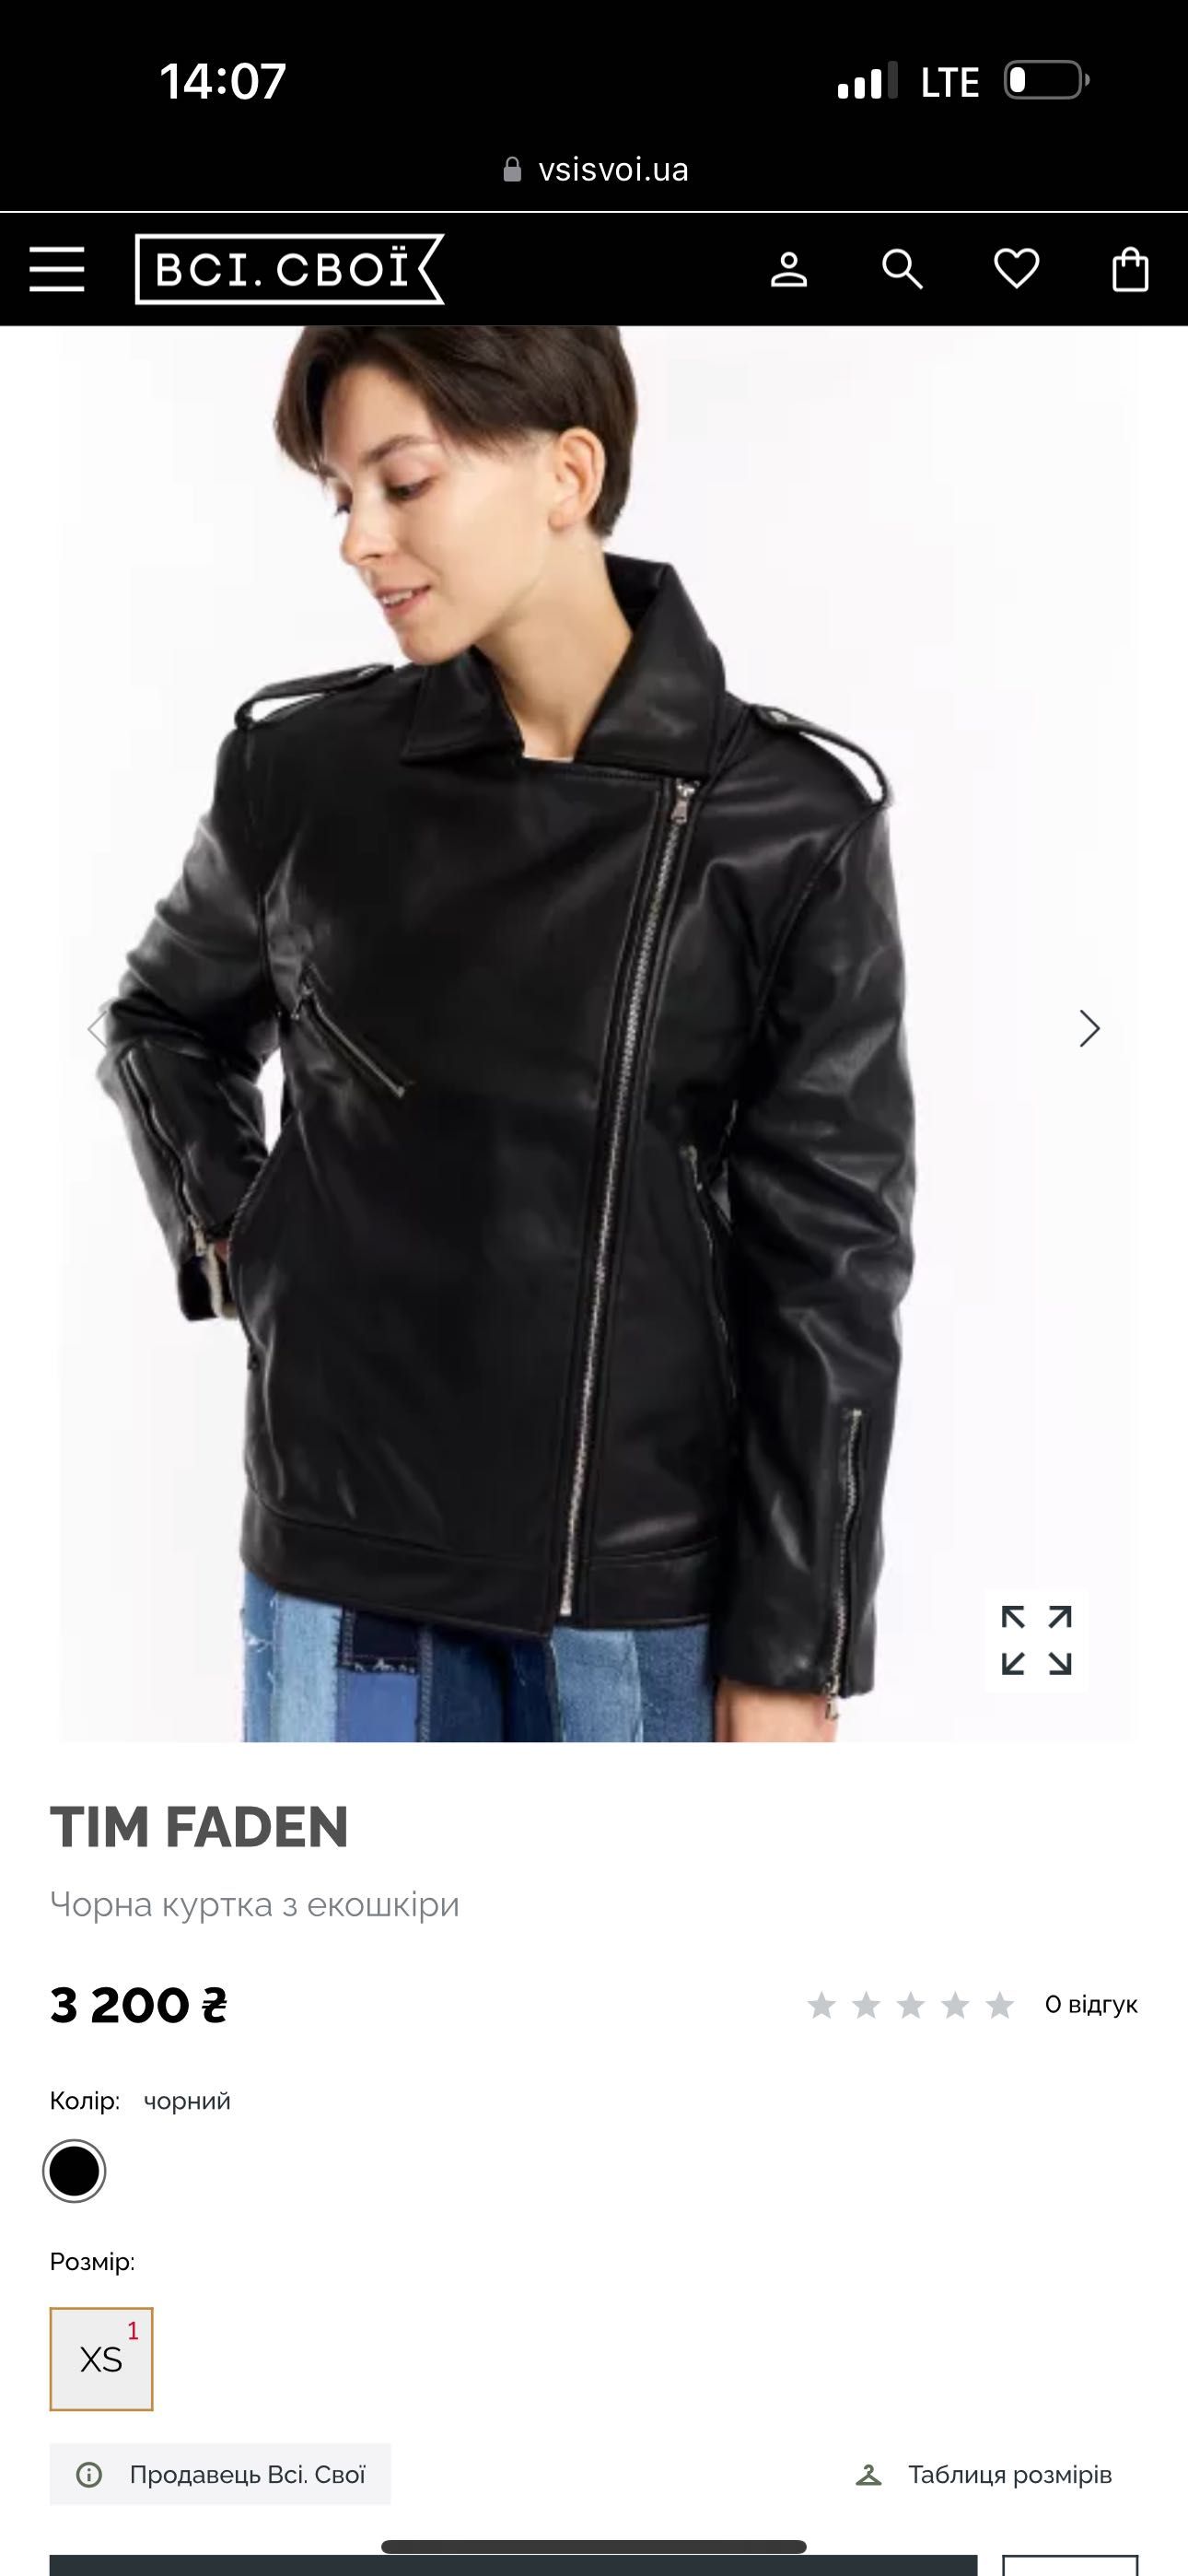 Куртка біла косуха Tim Faden від бренду ВСІ СВОЇ.